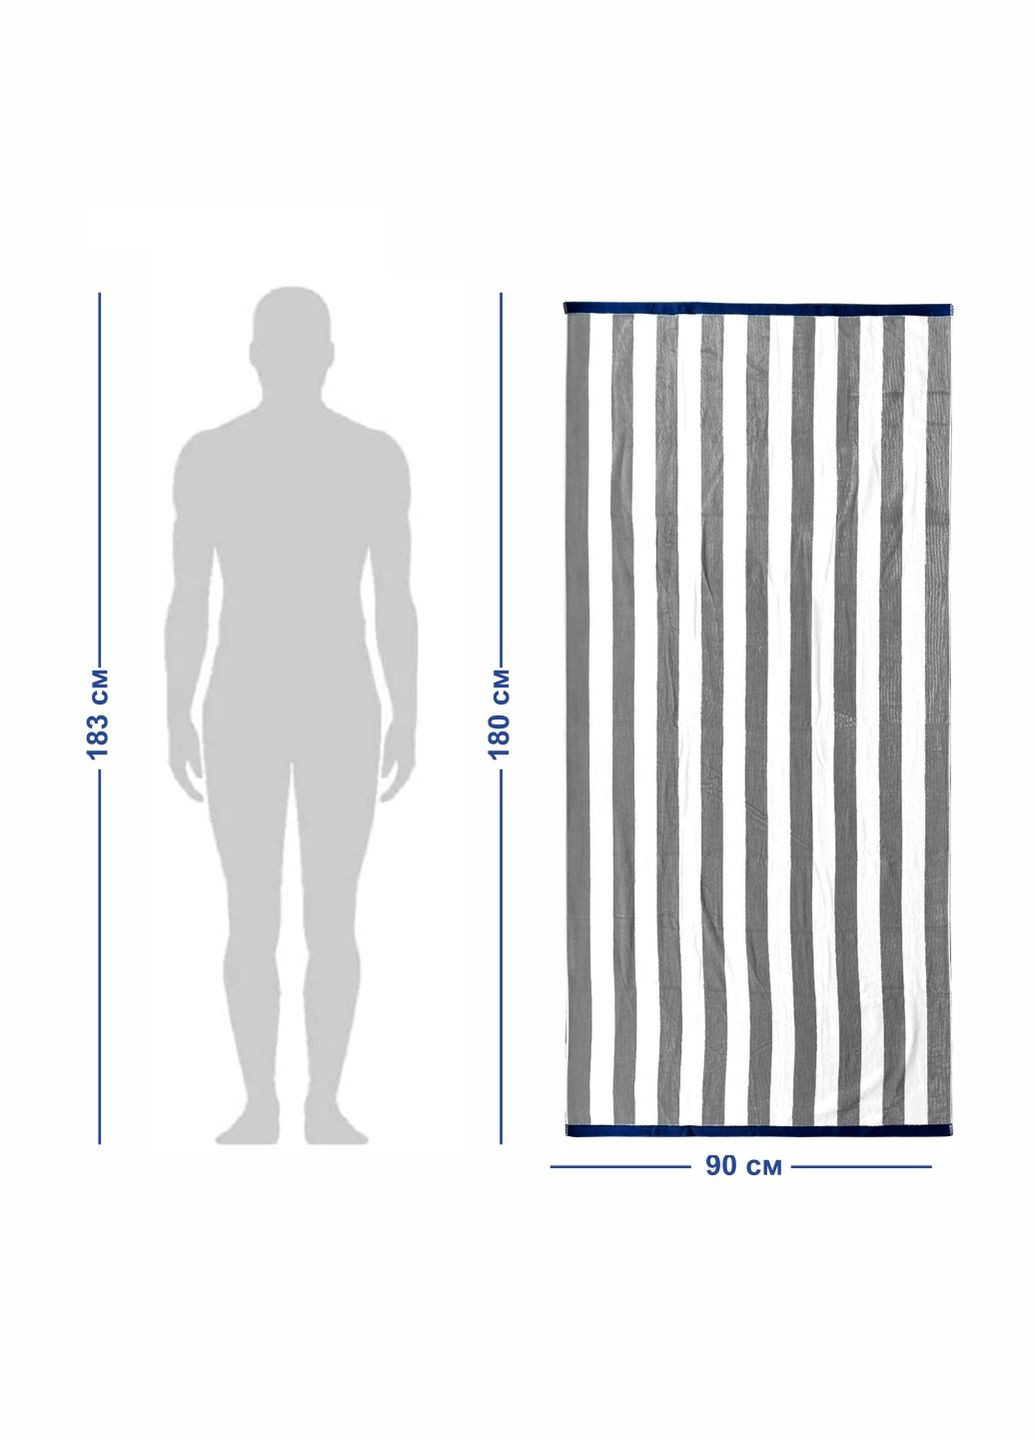 Lovely Svi полотенце xxl (90 на180 см) - хлопок велюр/махра - банные пляжные в басейн бело - серый полоска серый производство - Китай